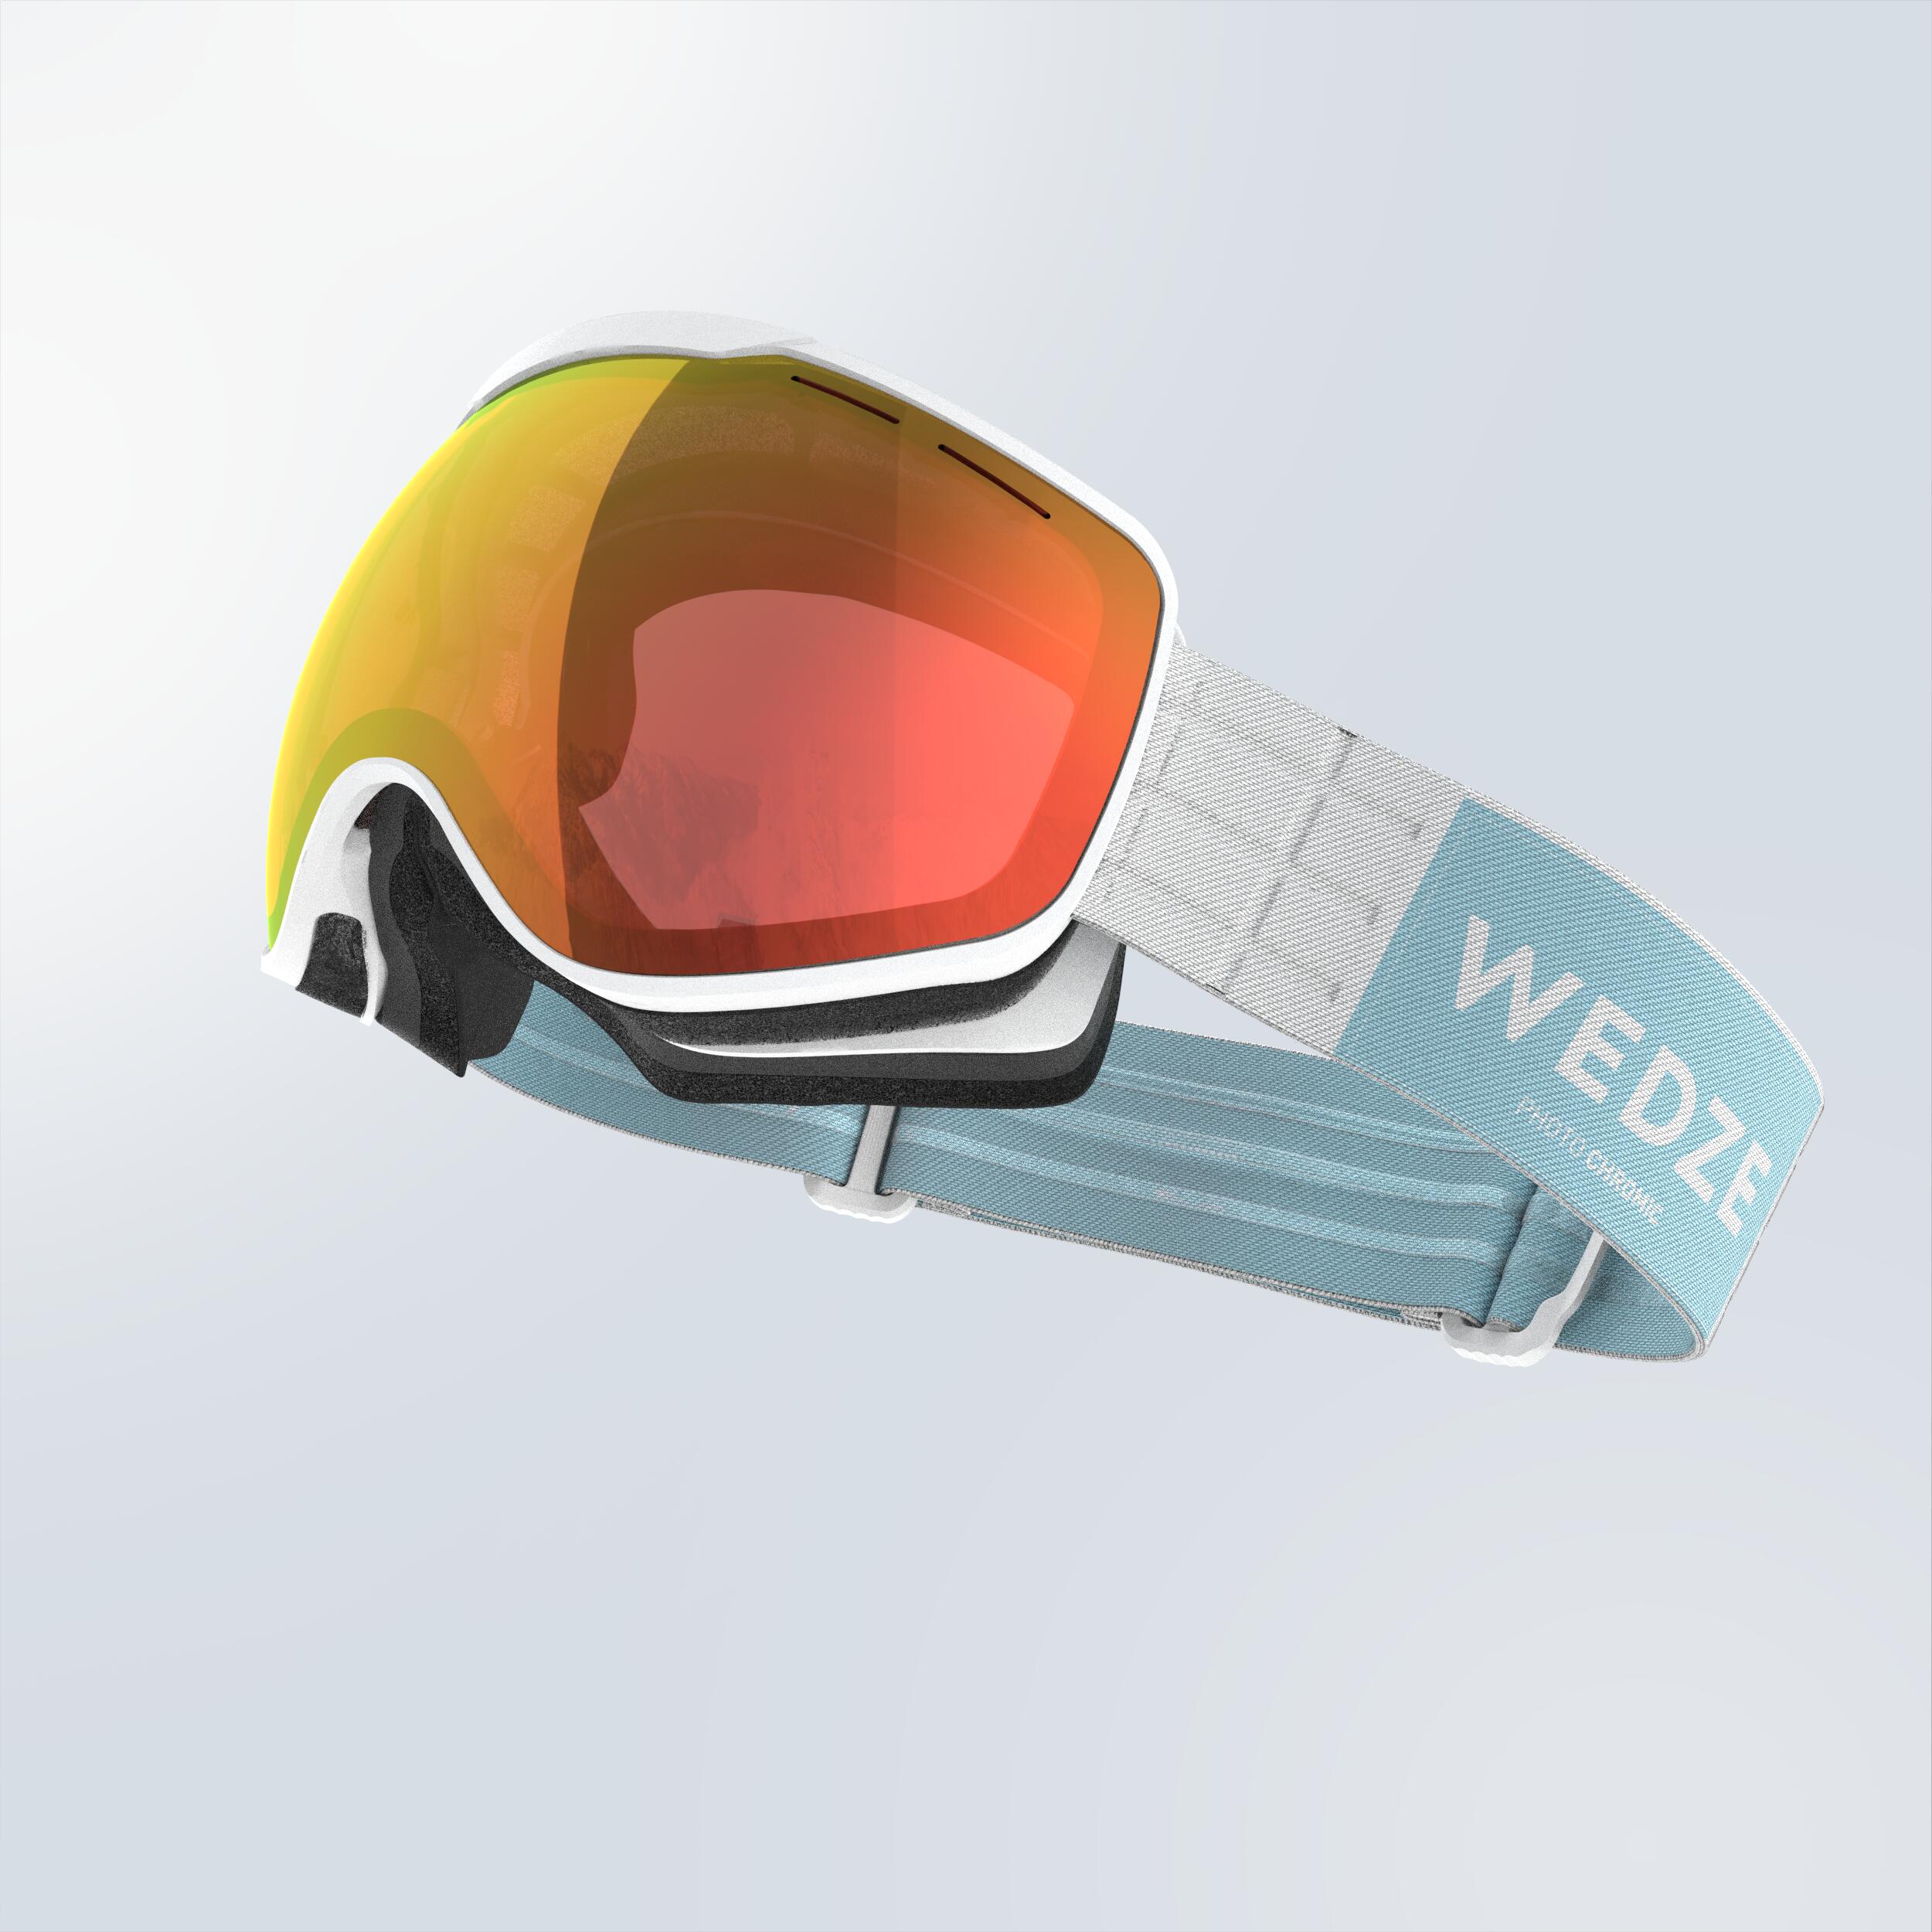 skidglasogon-snowboard-fotokromatiska-glas-alla-vader-g-900-ph-junior-vuxen-vit